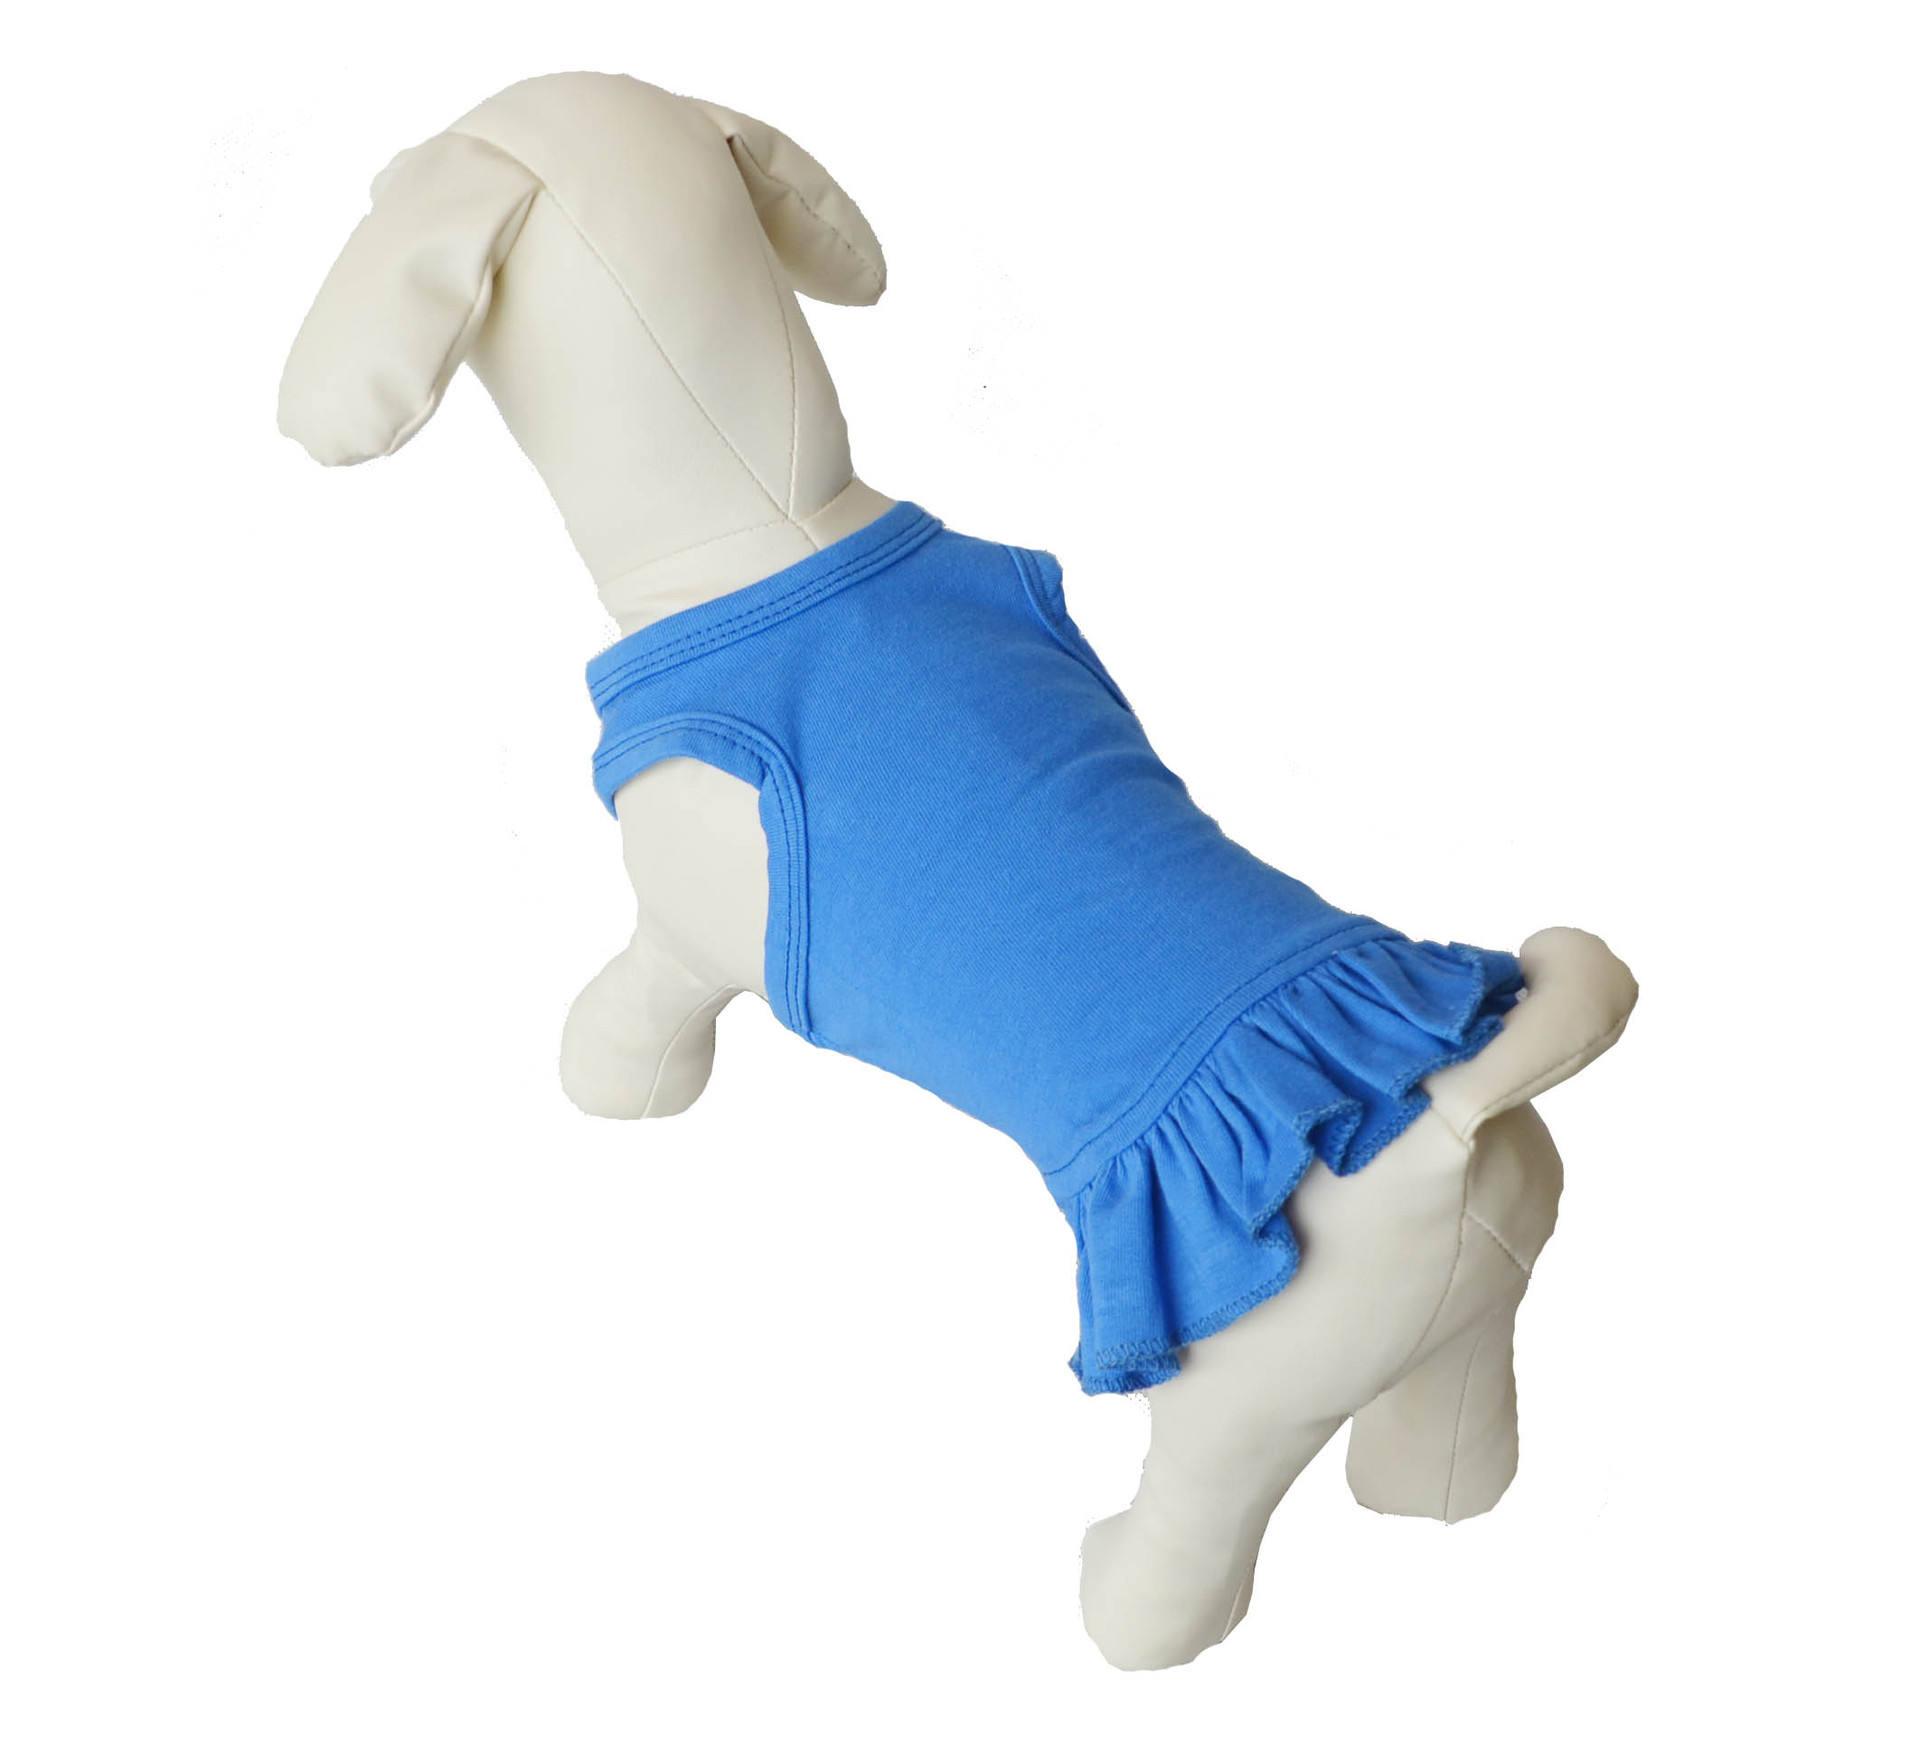 Spring Summer Multicolor Plain 100% Cotton Soft Pet Clothing Dress Dog Vest Wholesale